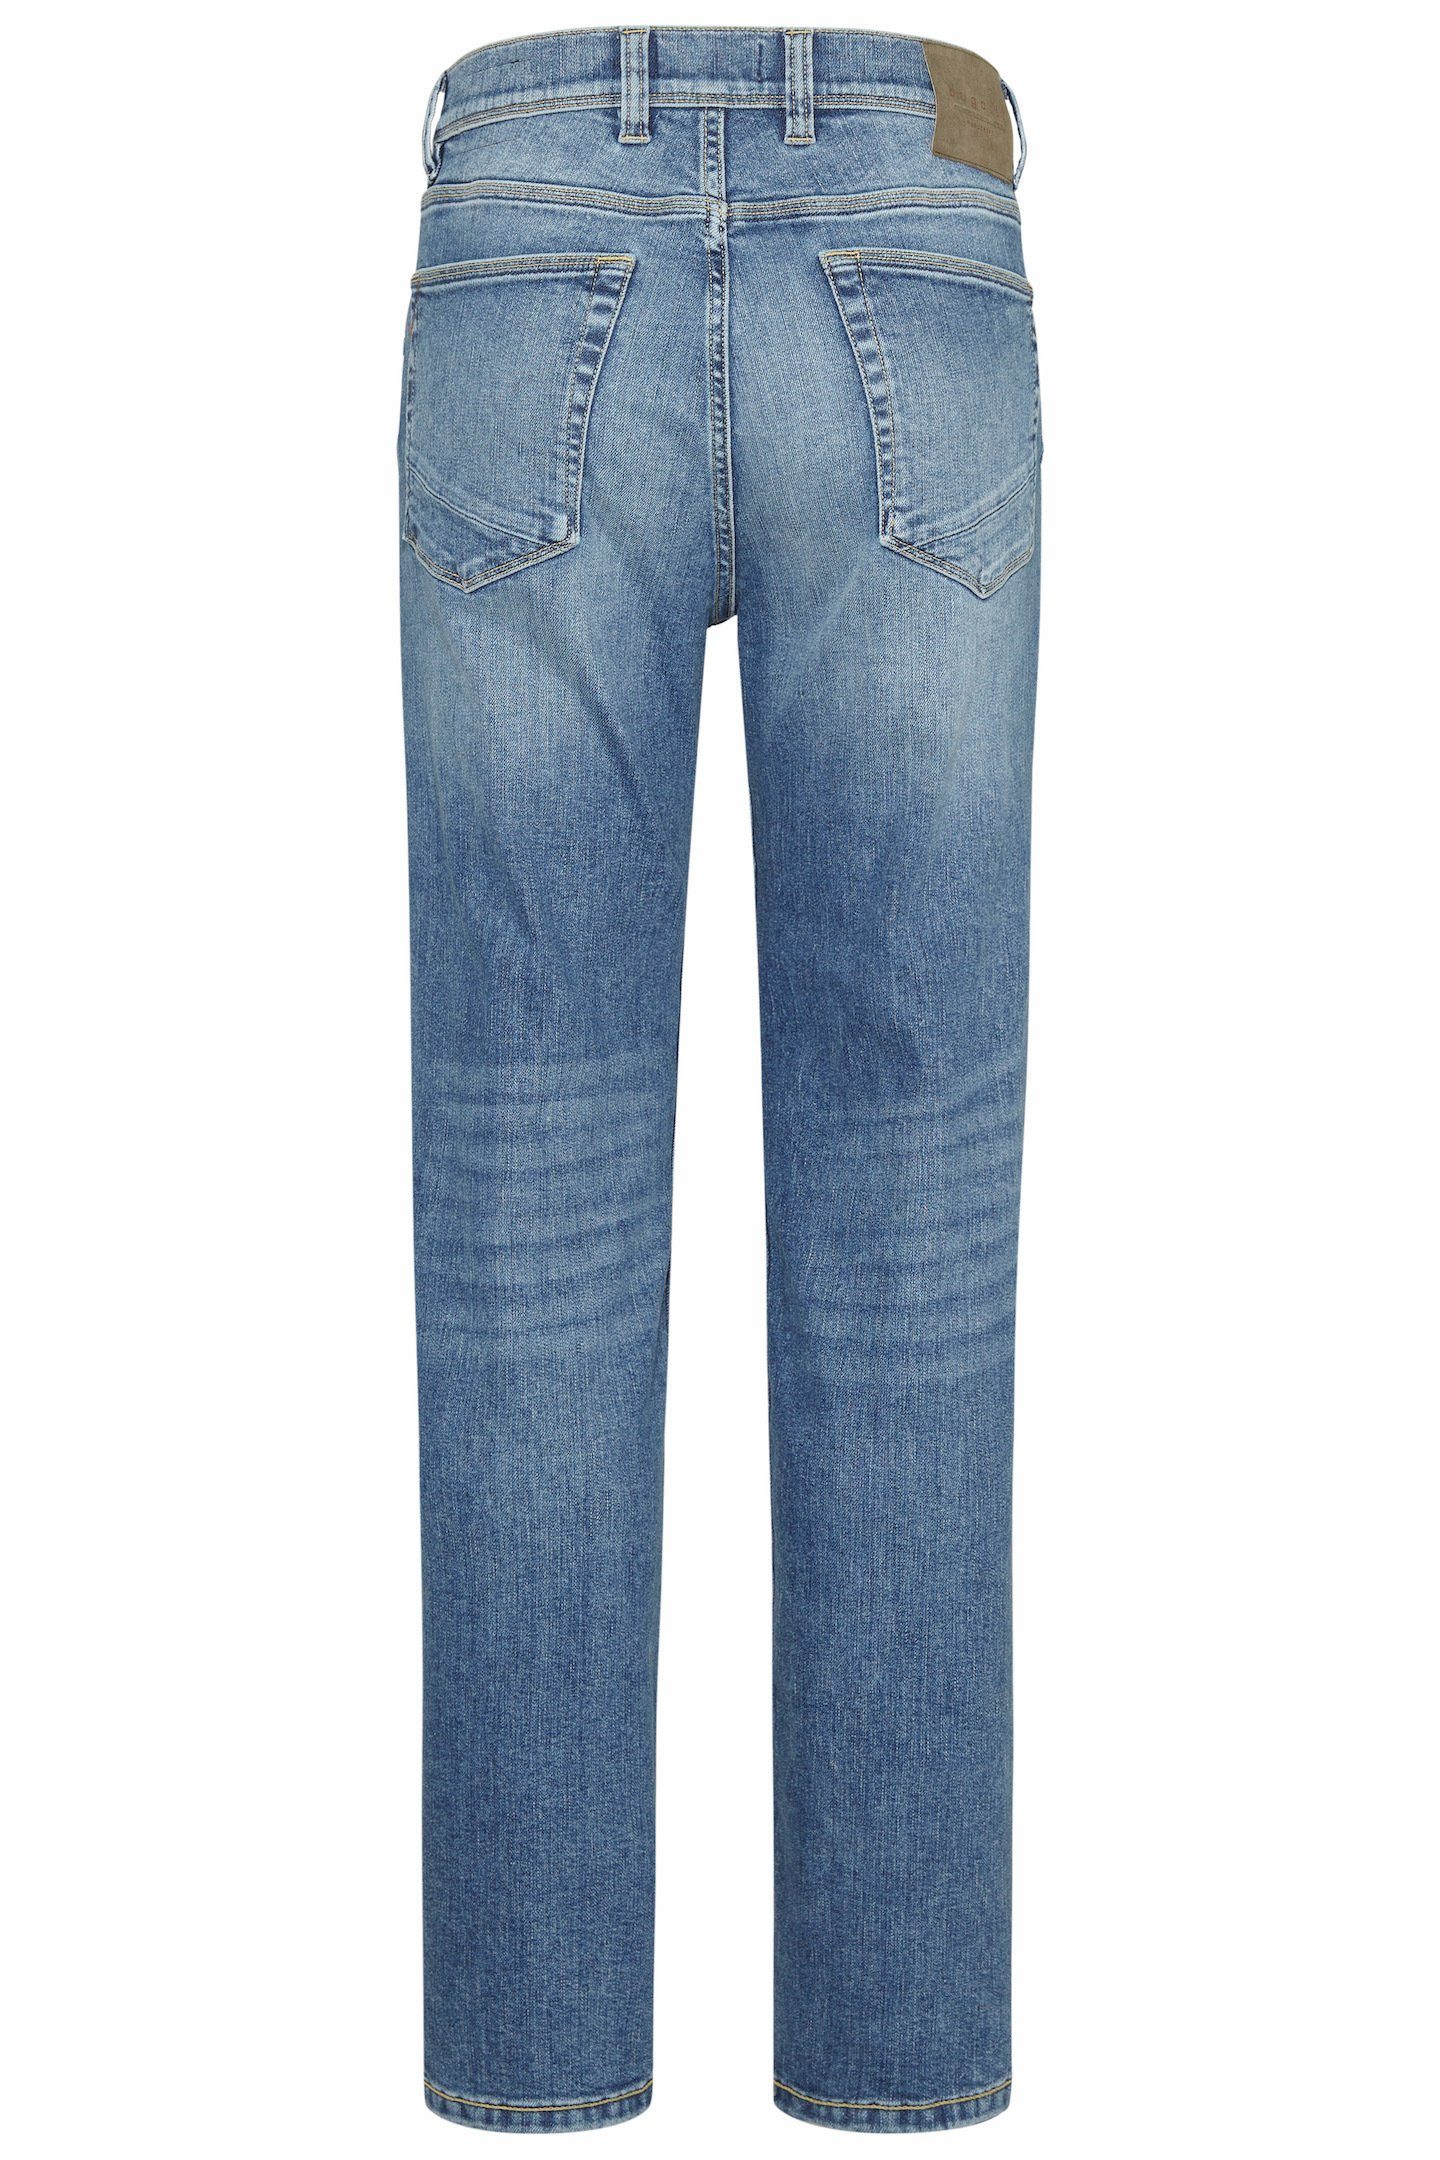 bugatti Wash blau 5-Pocket-Jeans im Look Used